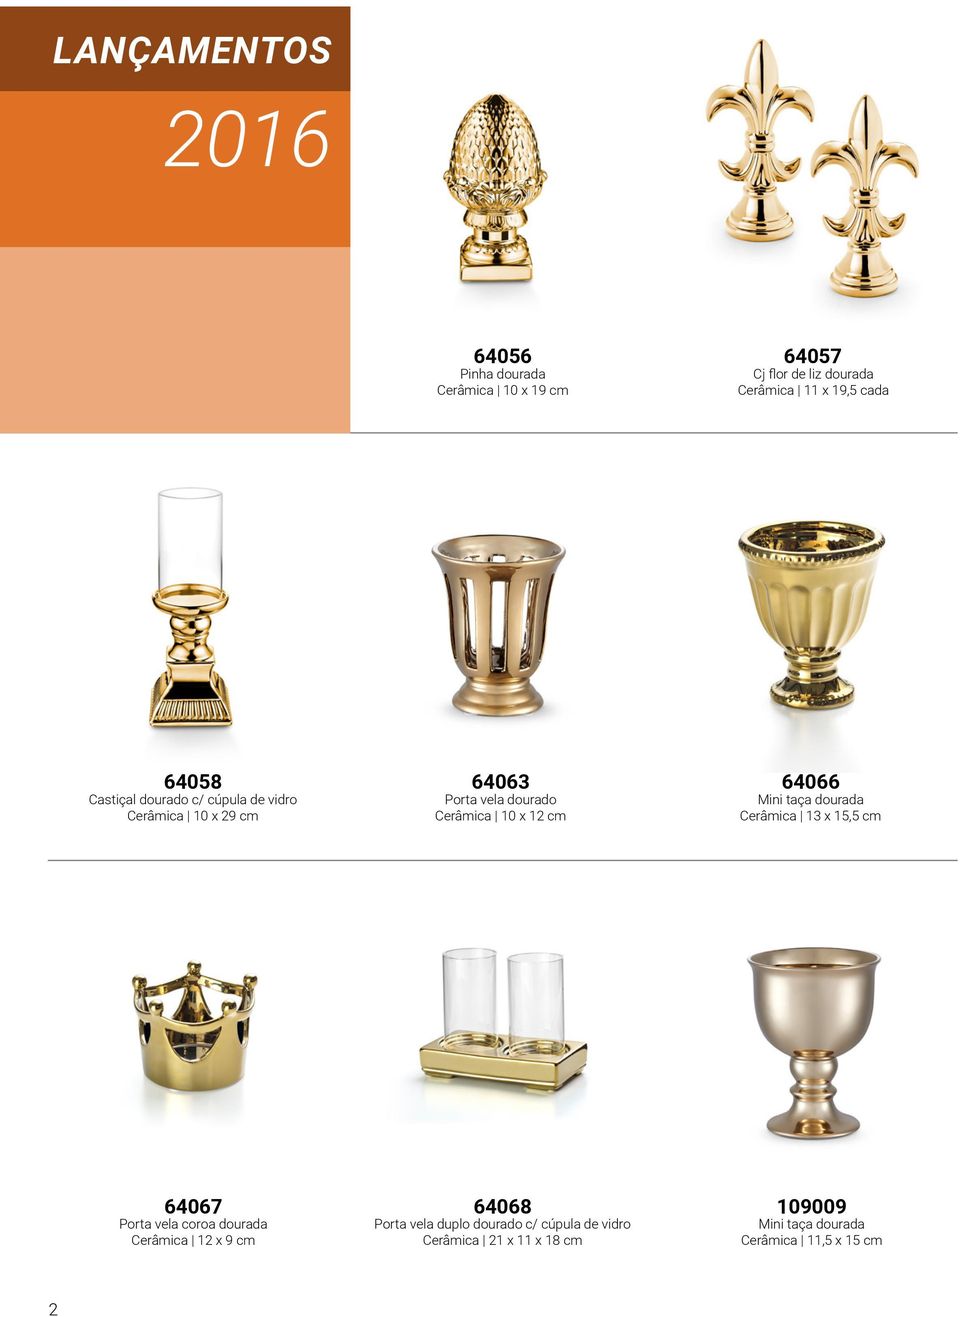 cm 64066 Mini taça dourada Cerâmica 13 x 15,5 cm 64067 Porta vela coroa dourada Cerâmica 12 x 9 cm 64068